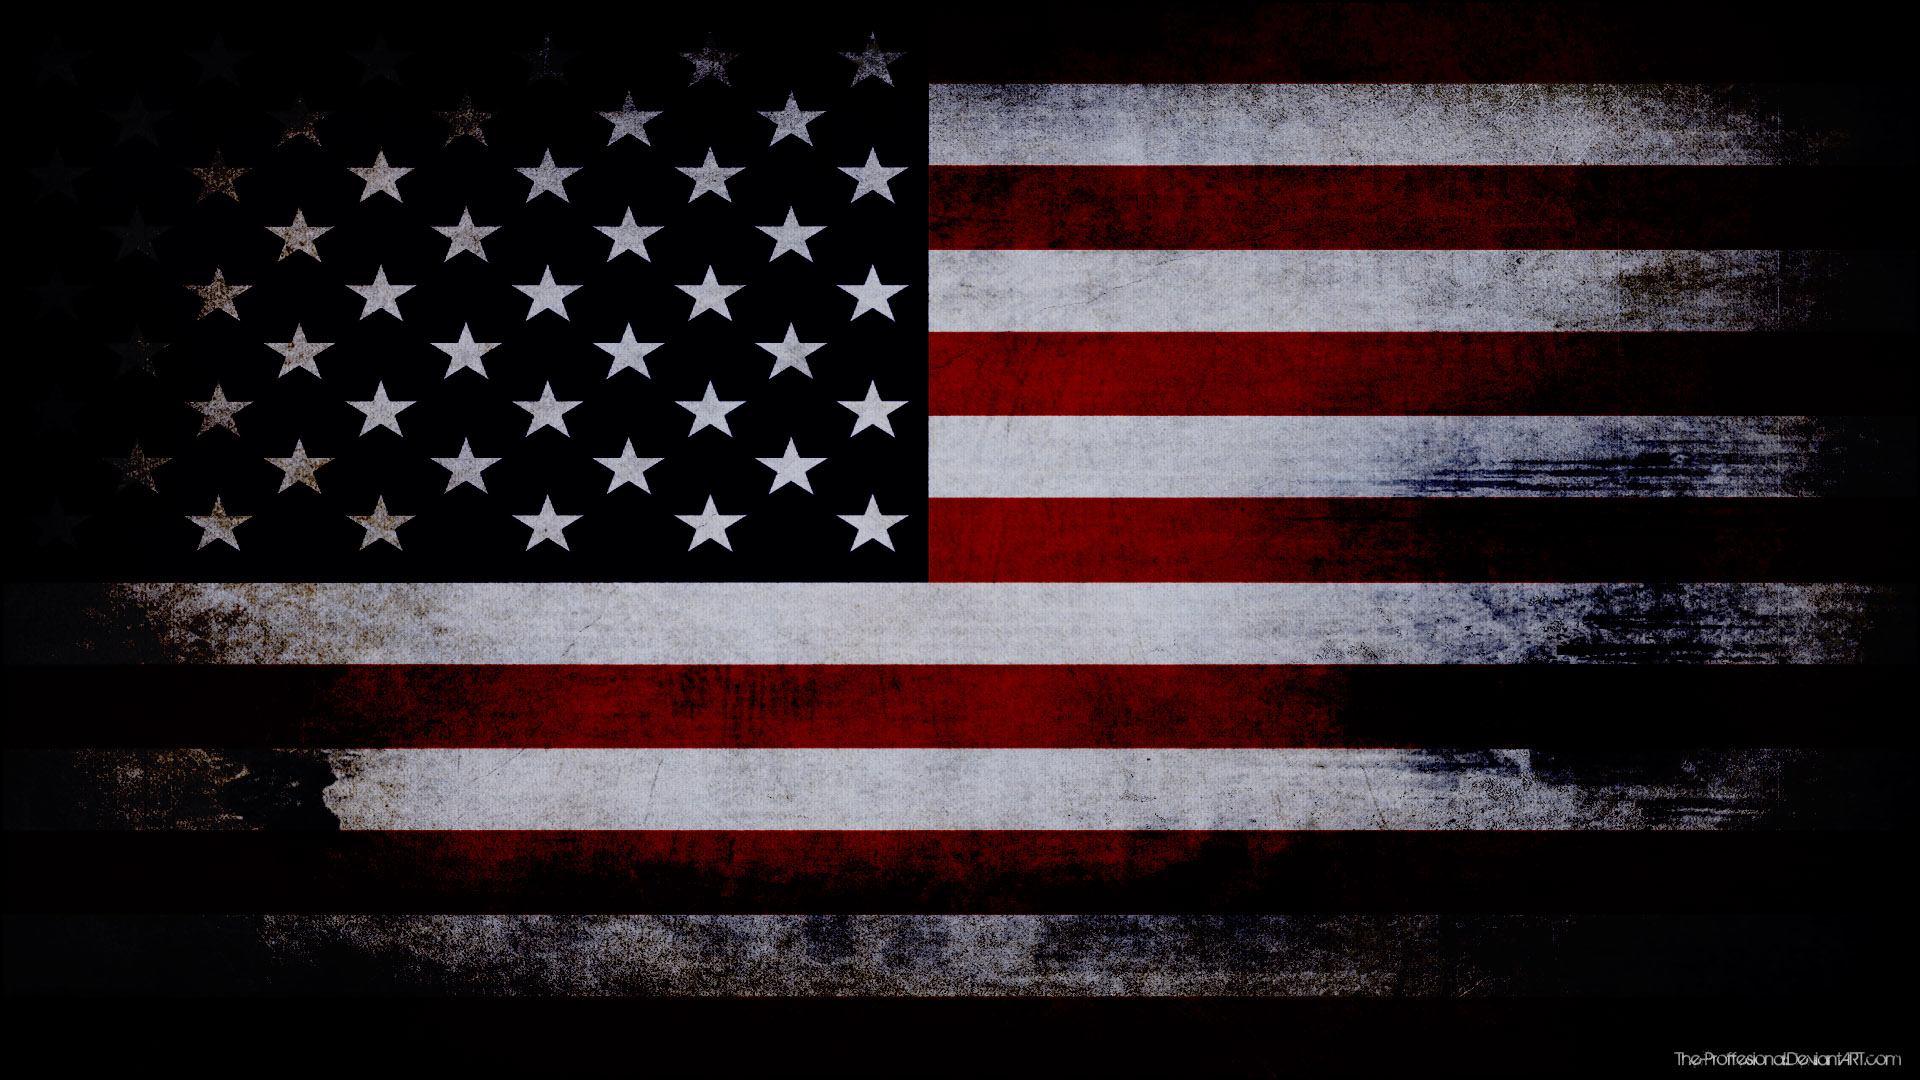 flags, USA - desktop wallpaper